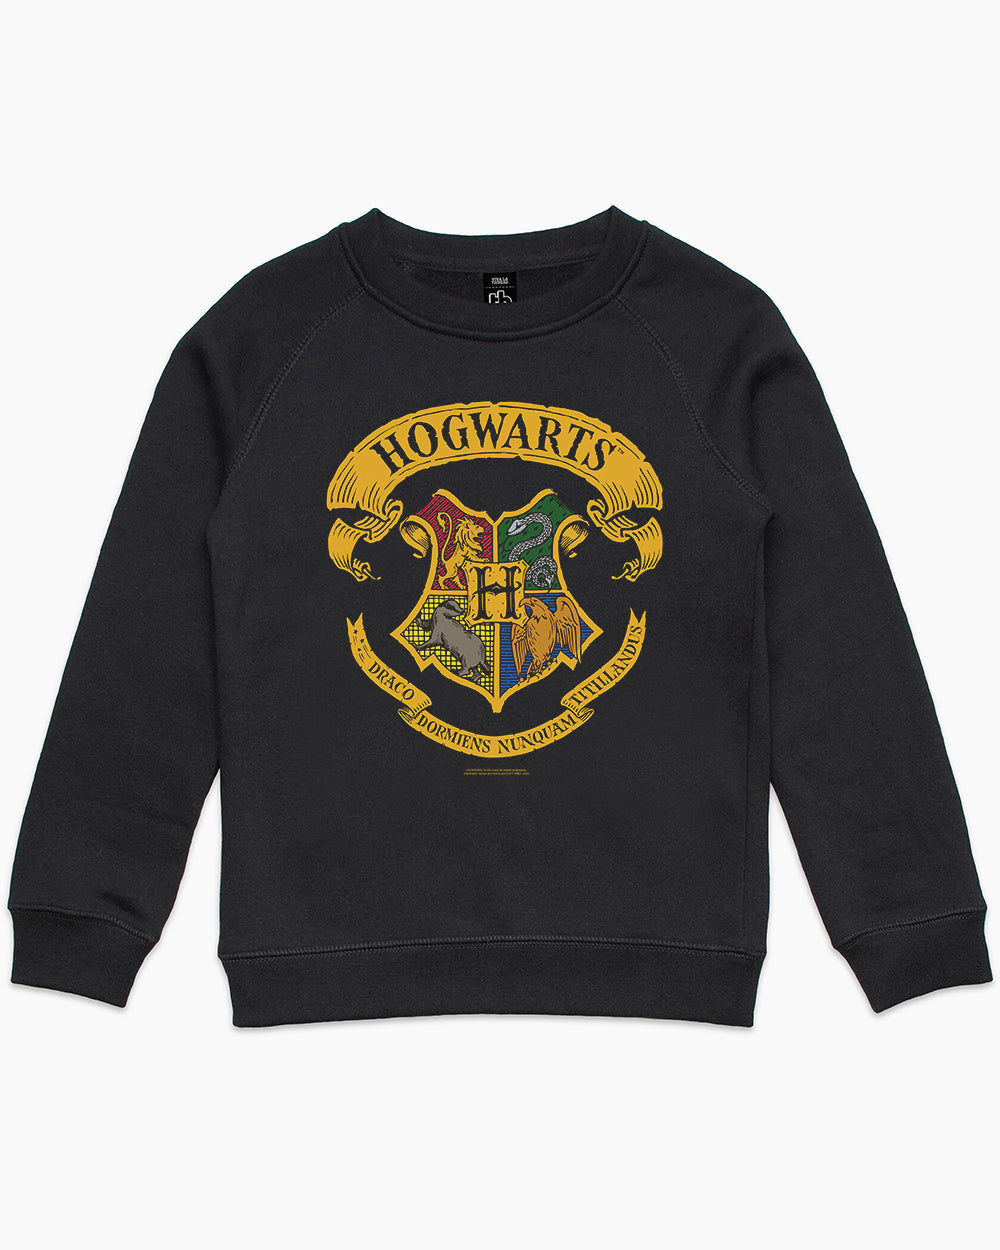 Hogwarts Crest | | Hoodie Potter Kids Threadheads Harry Merch Europe Official